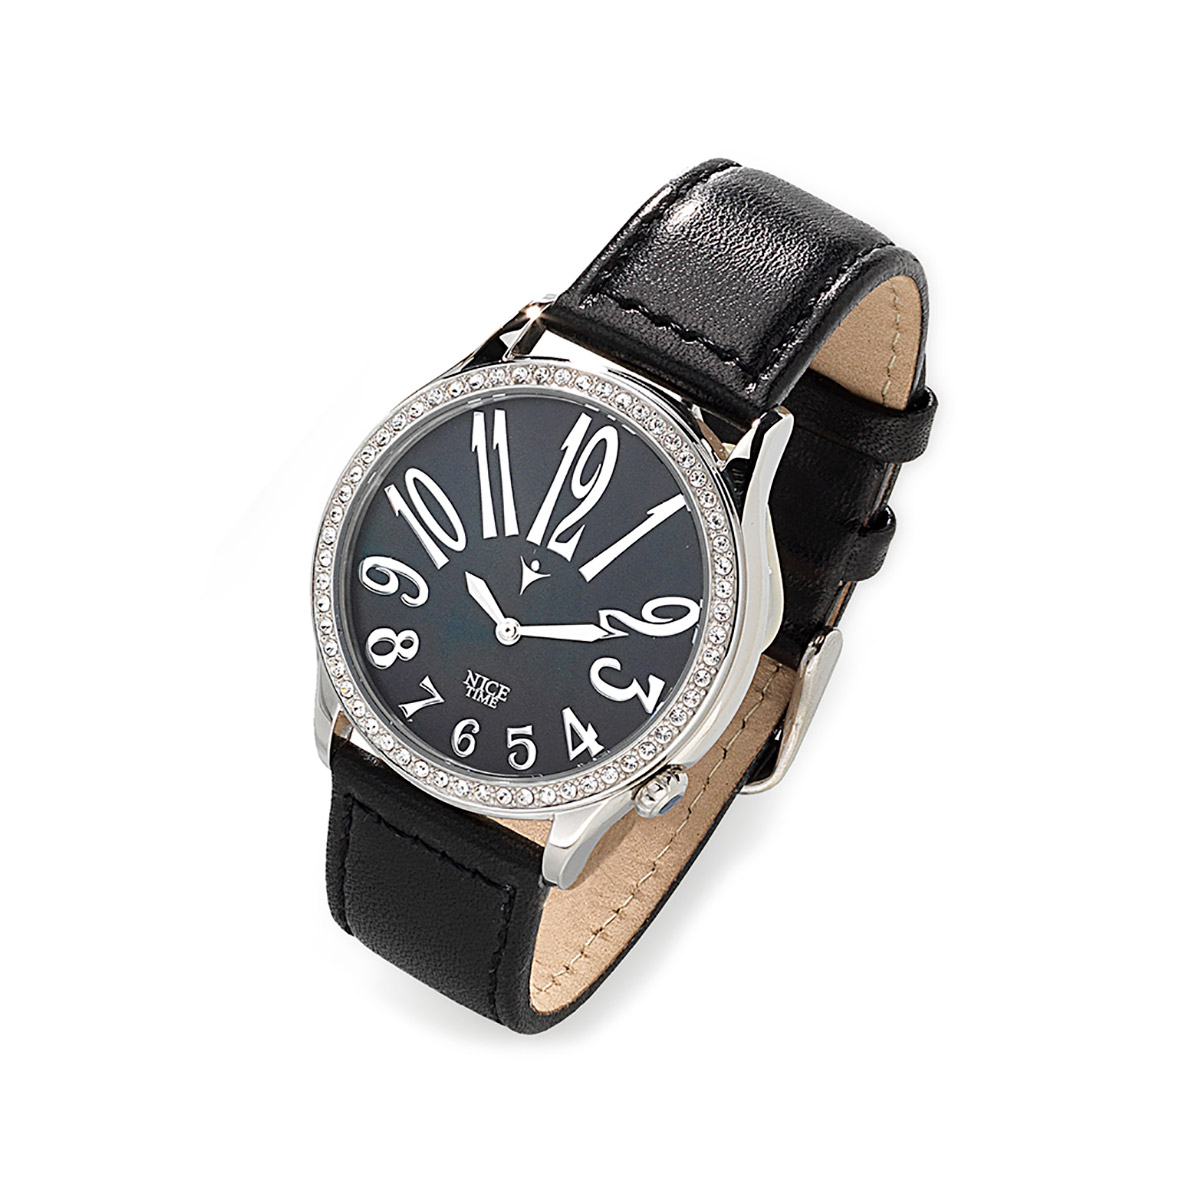 Reloj con correa de piel negra, con carátula de acero inoxidable en tono platino, centro negro.